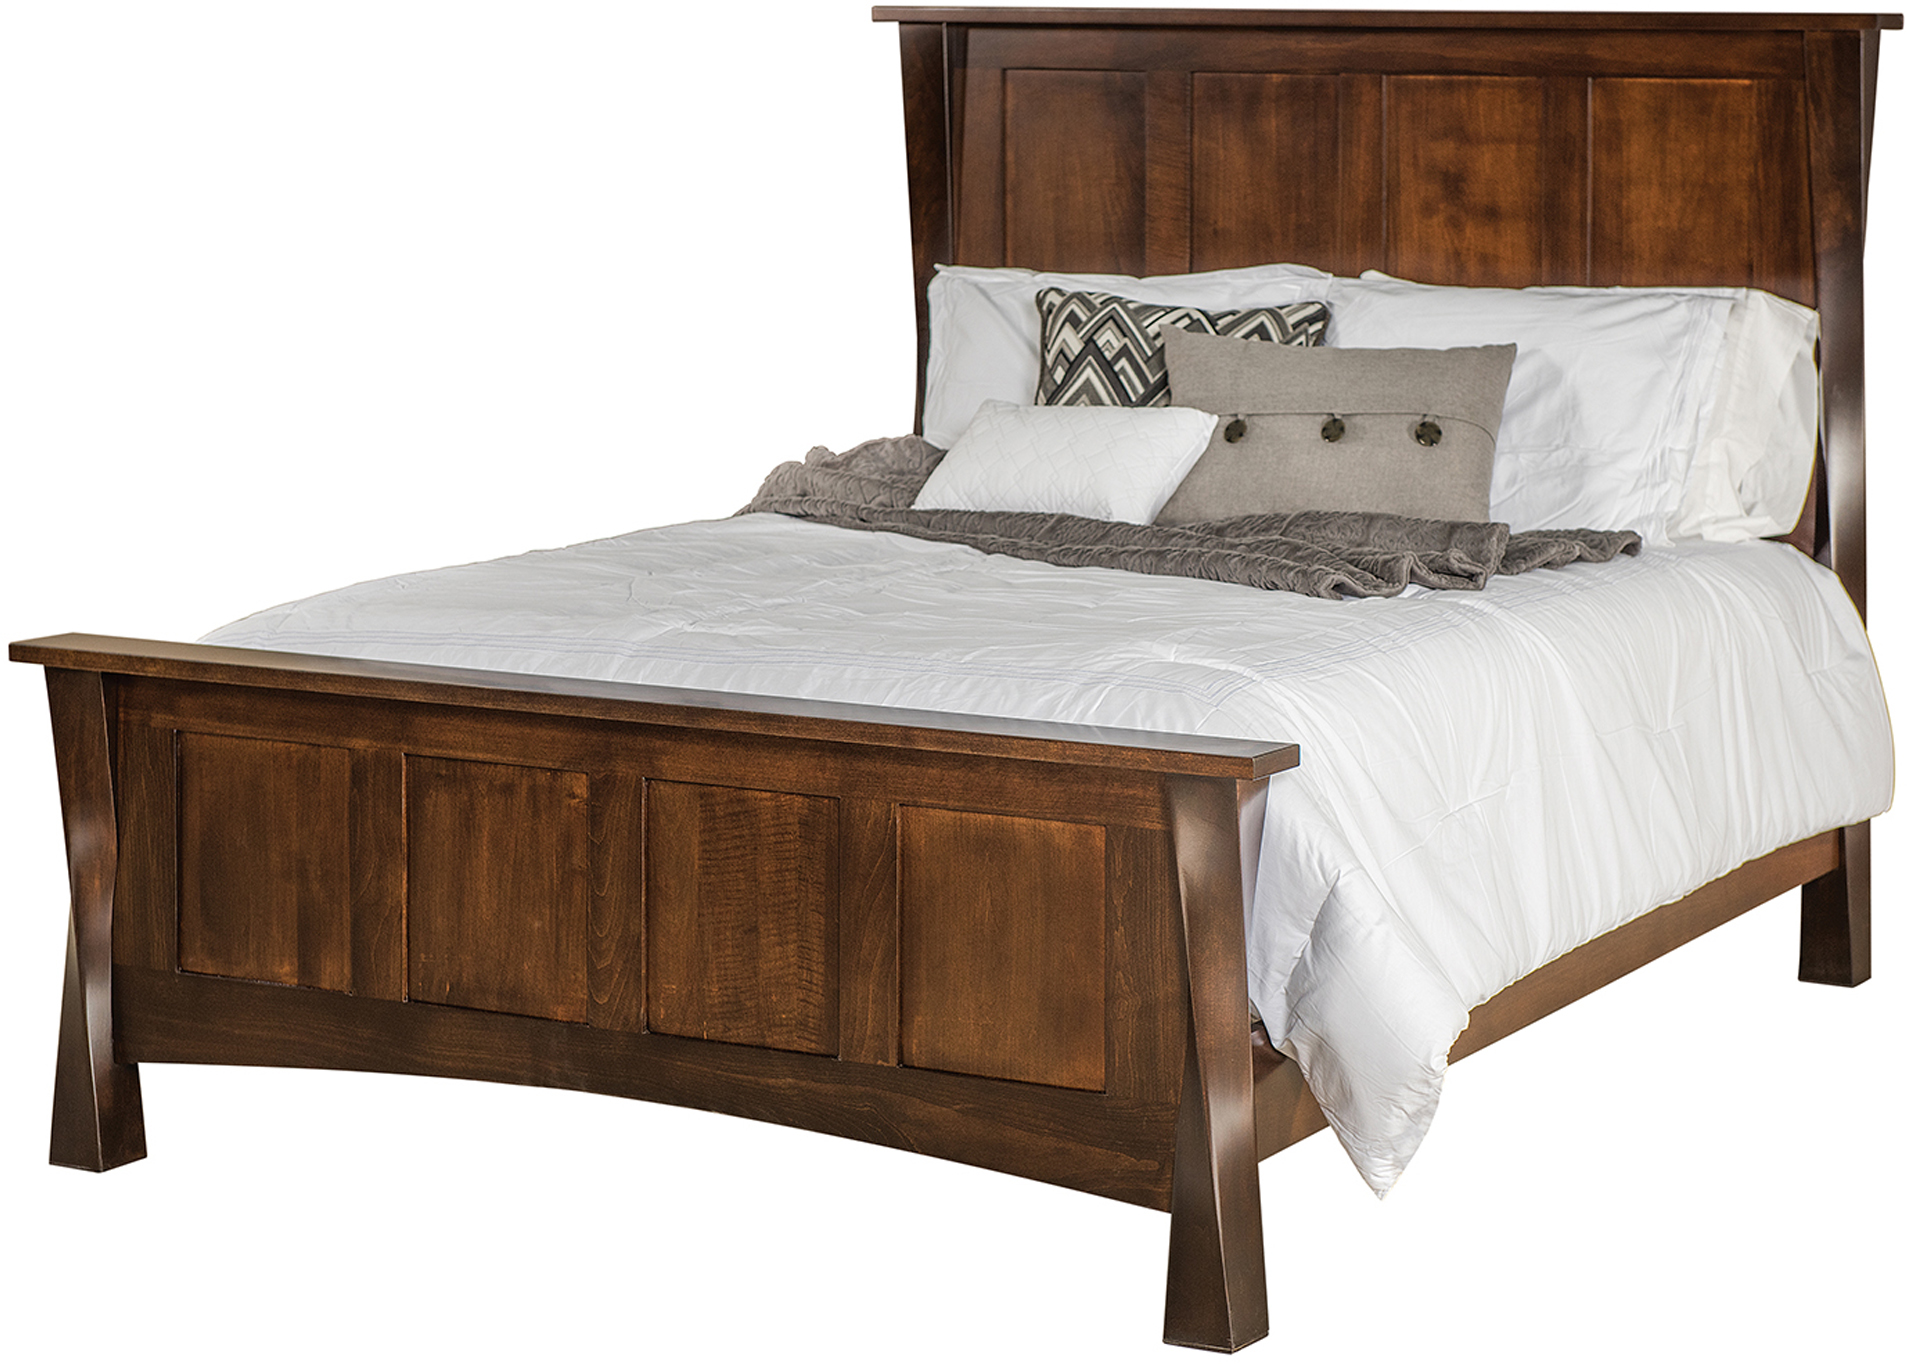 lexington bedroom furniture sterling